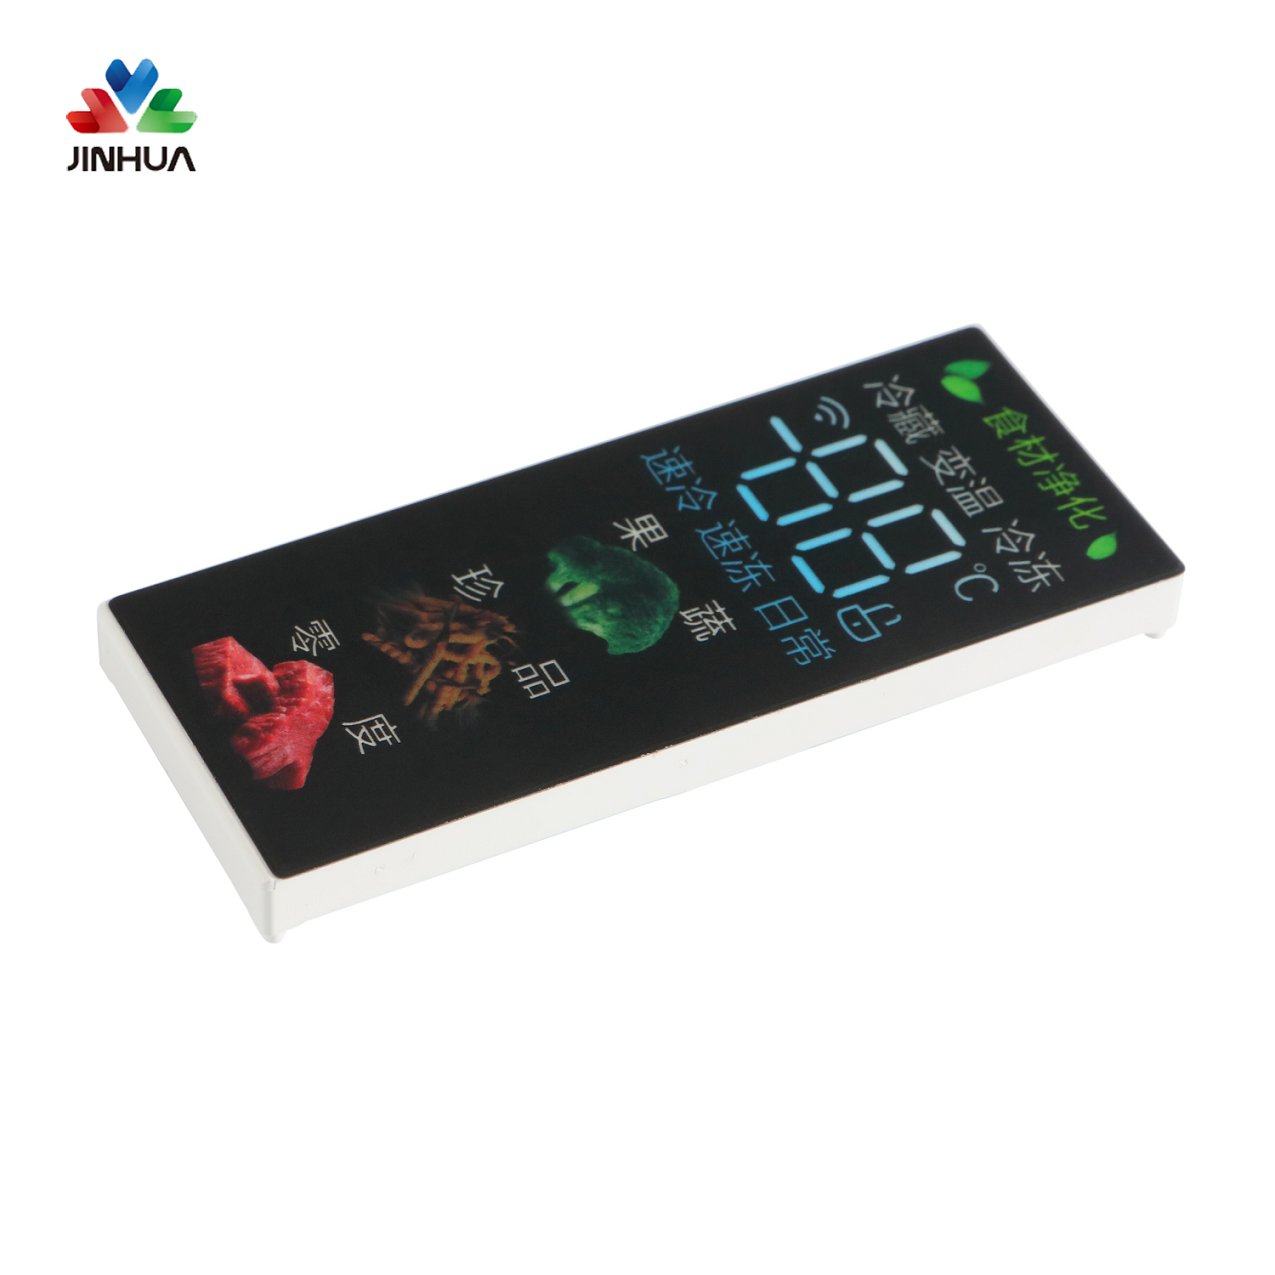 Heißer Verkaufs-kundenspezifischer LED-Bildschirm-Modul-Farbfolien-China-Lieferant